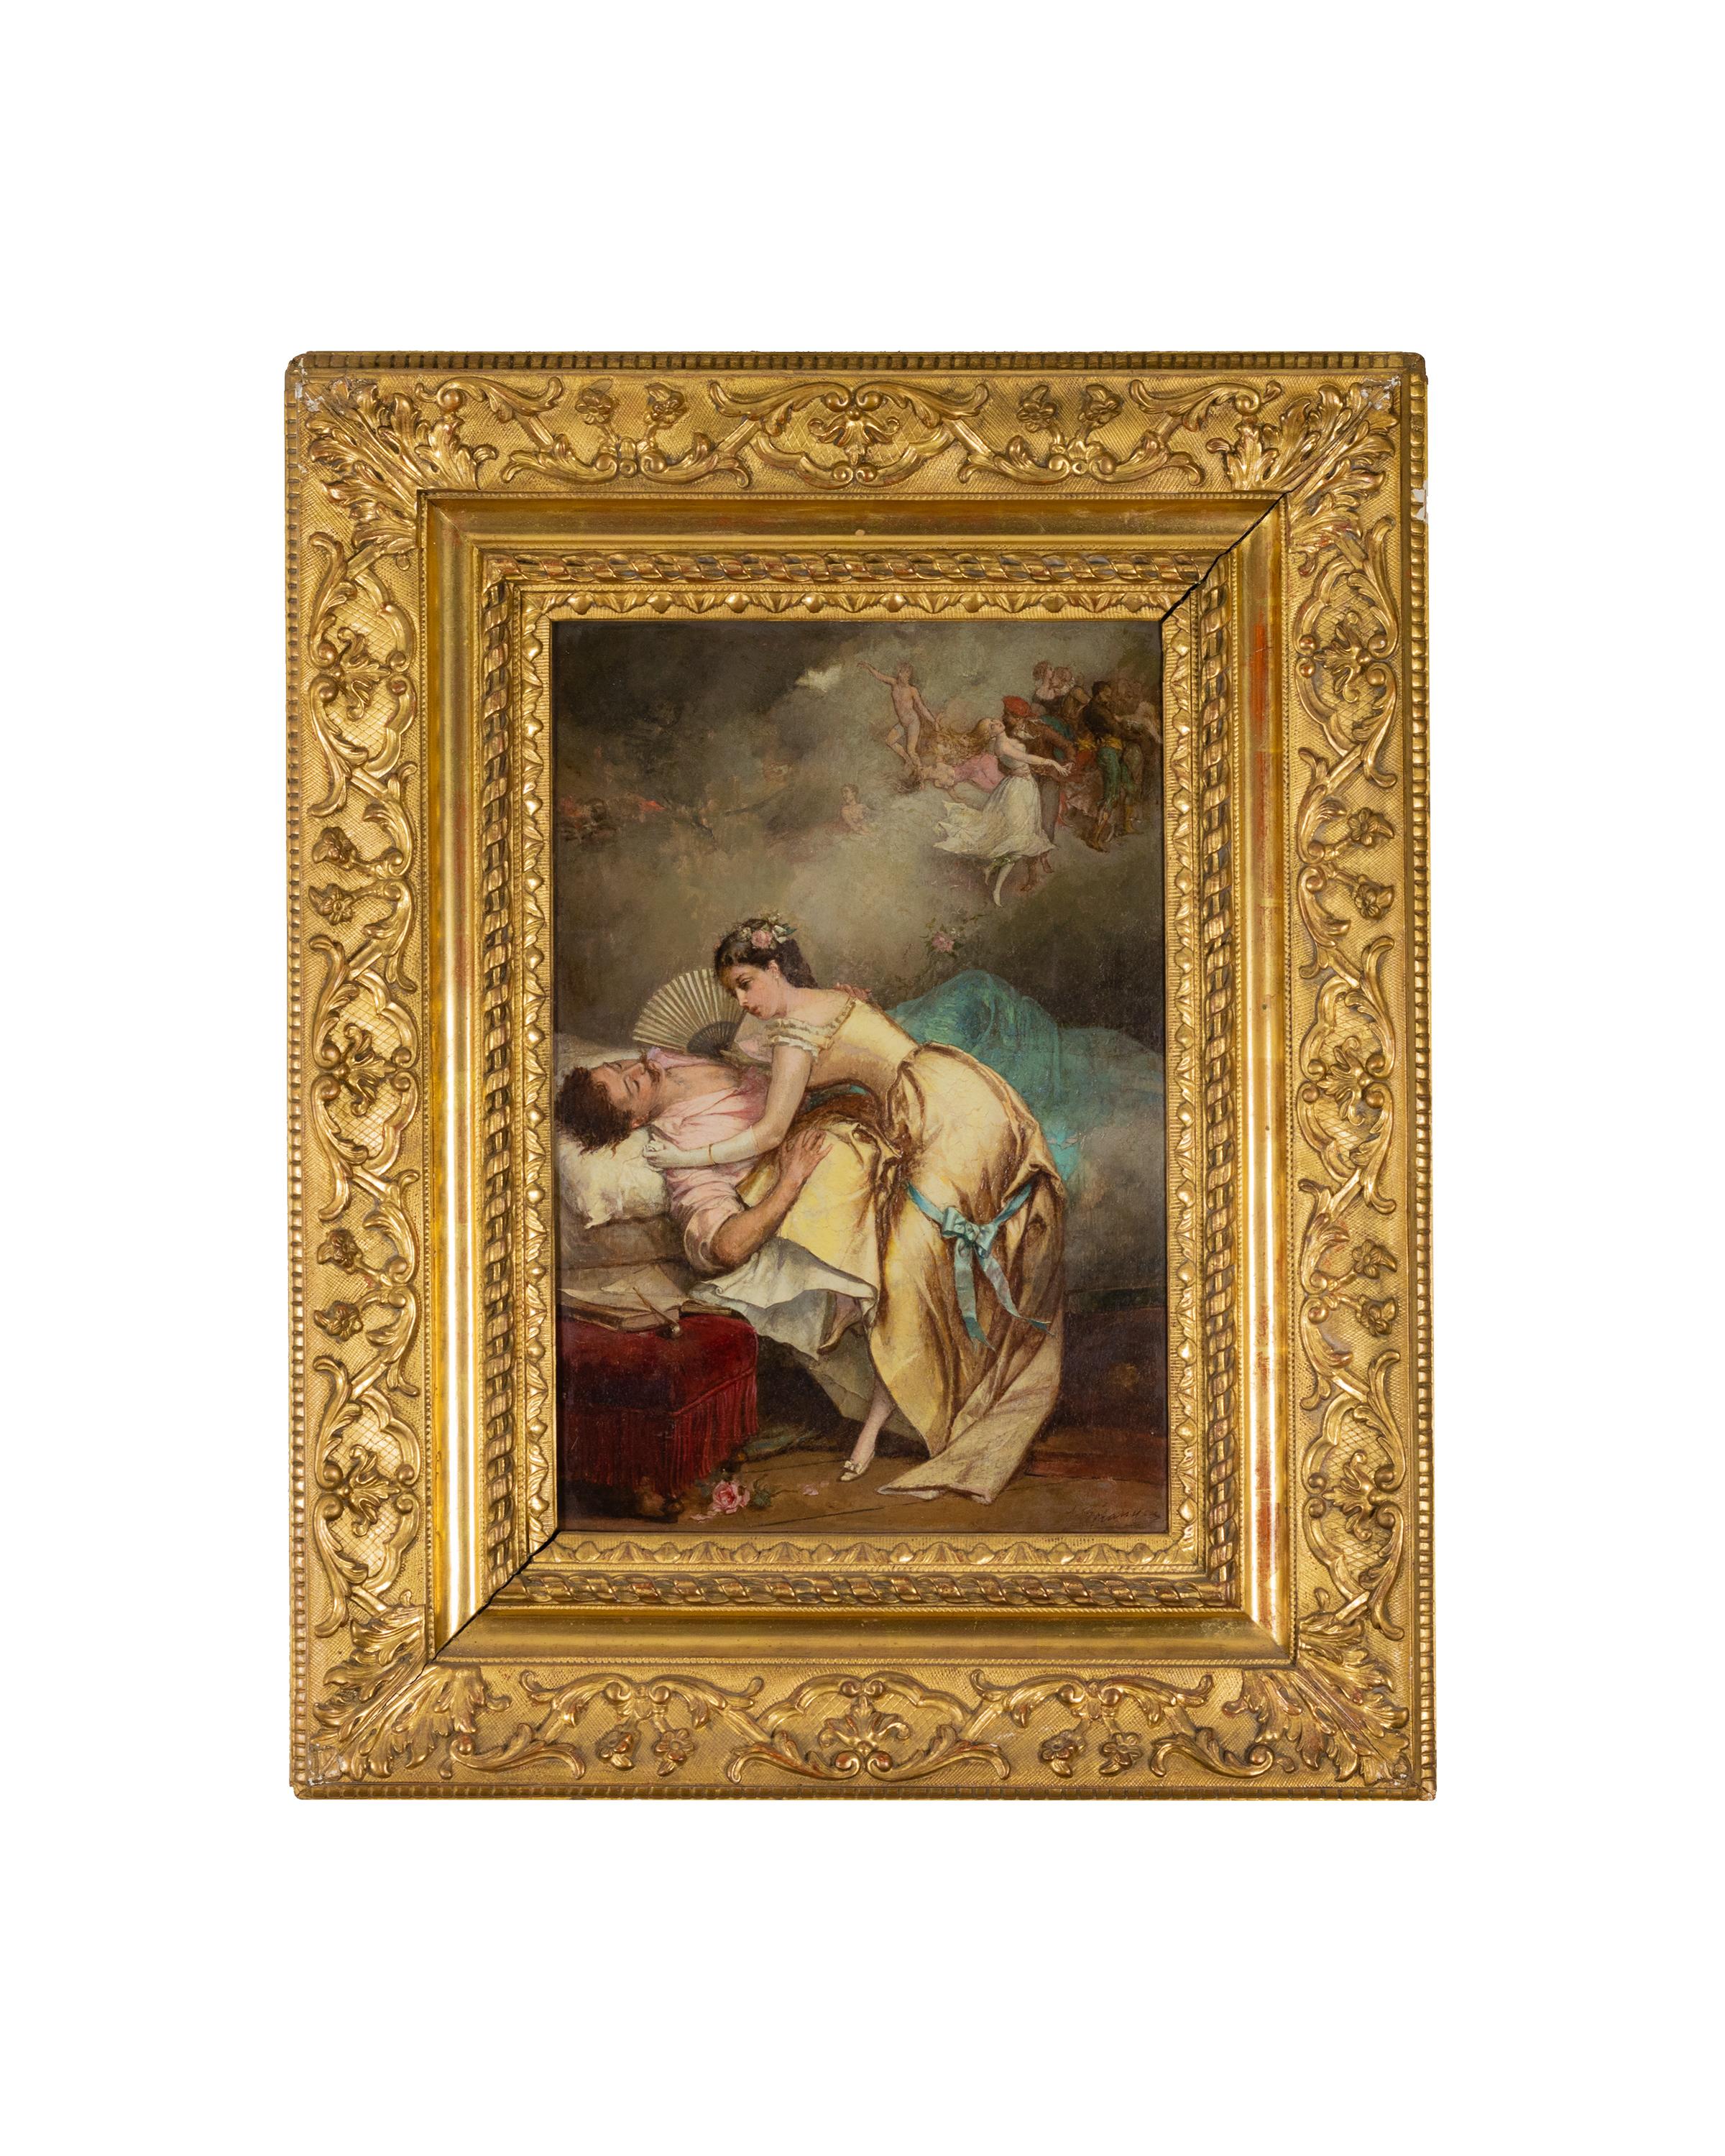 Ein Gemälde des 19. Jahrhunderts von einem verliebten Paar / galante Szene der griechisch-römischen Inspiration der Schule von Antoine Watteau Watteau von Jean Baptiste Emile Beranger.

Unterschrift 